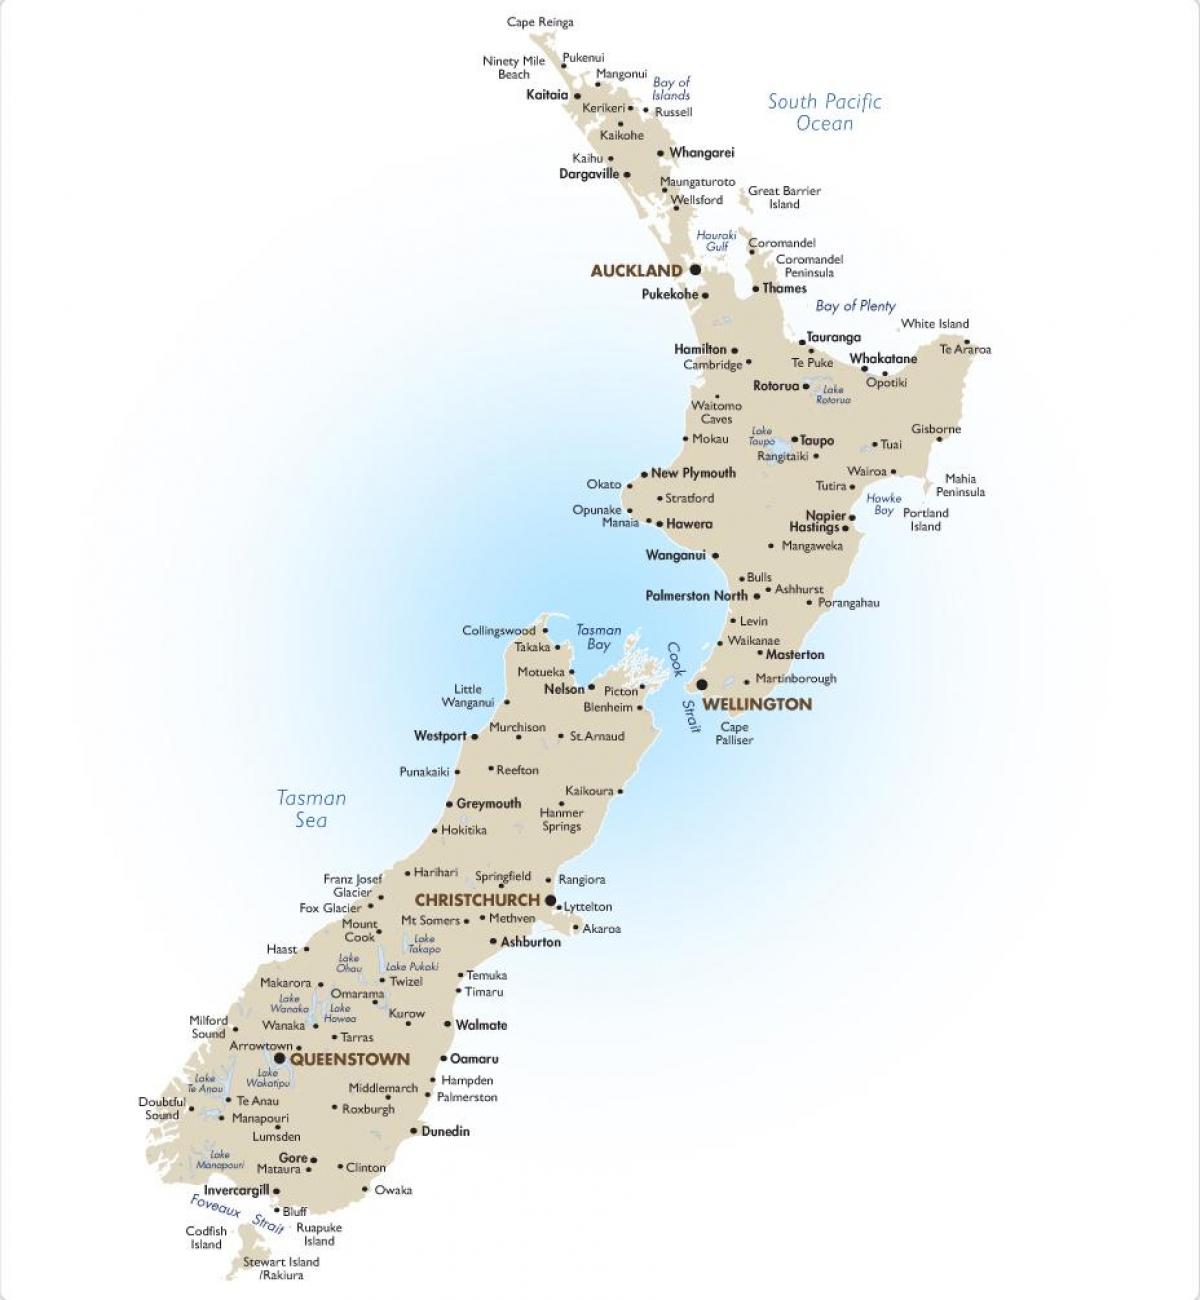 Karte von Neuseeland mit den großen Städten